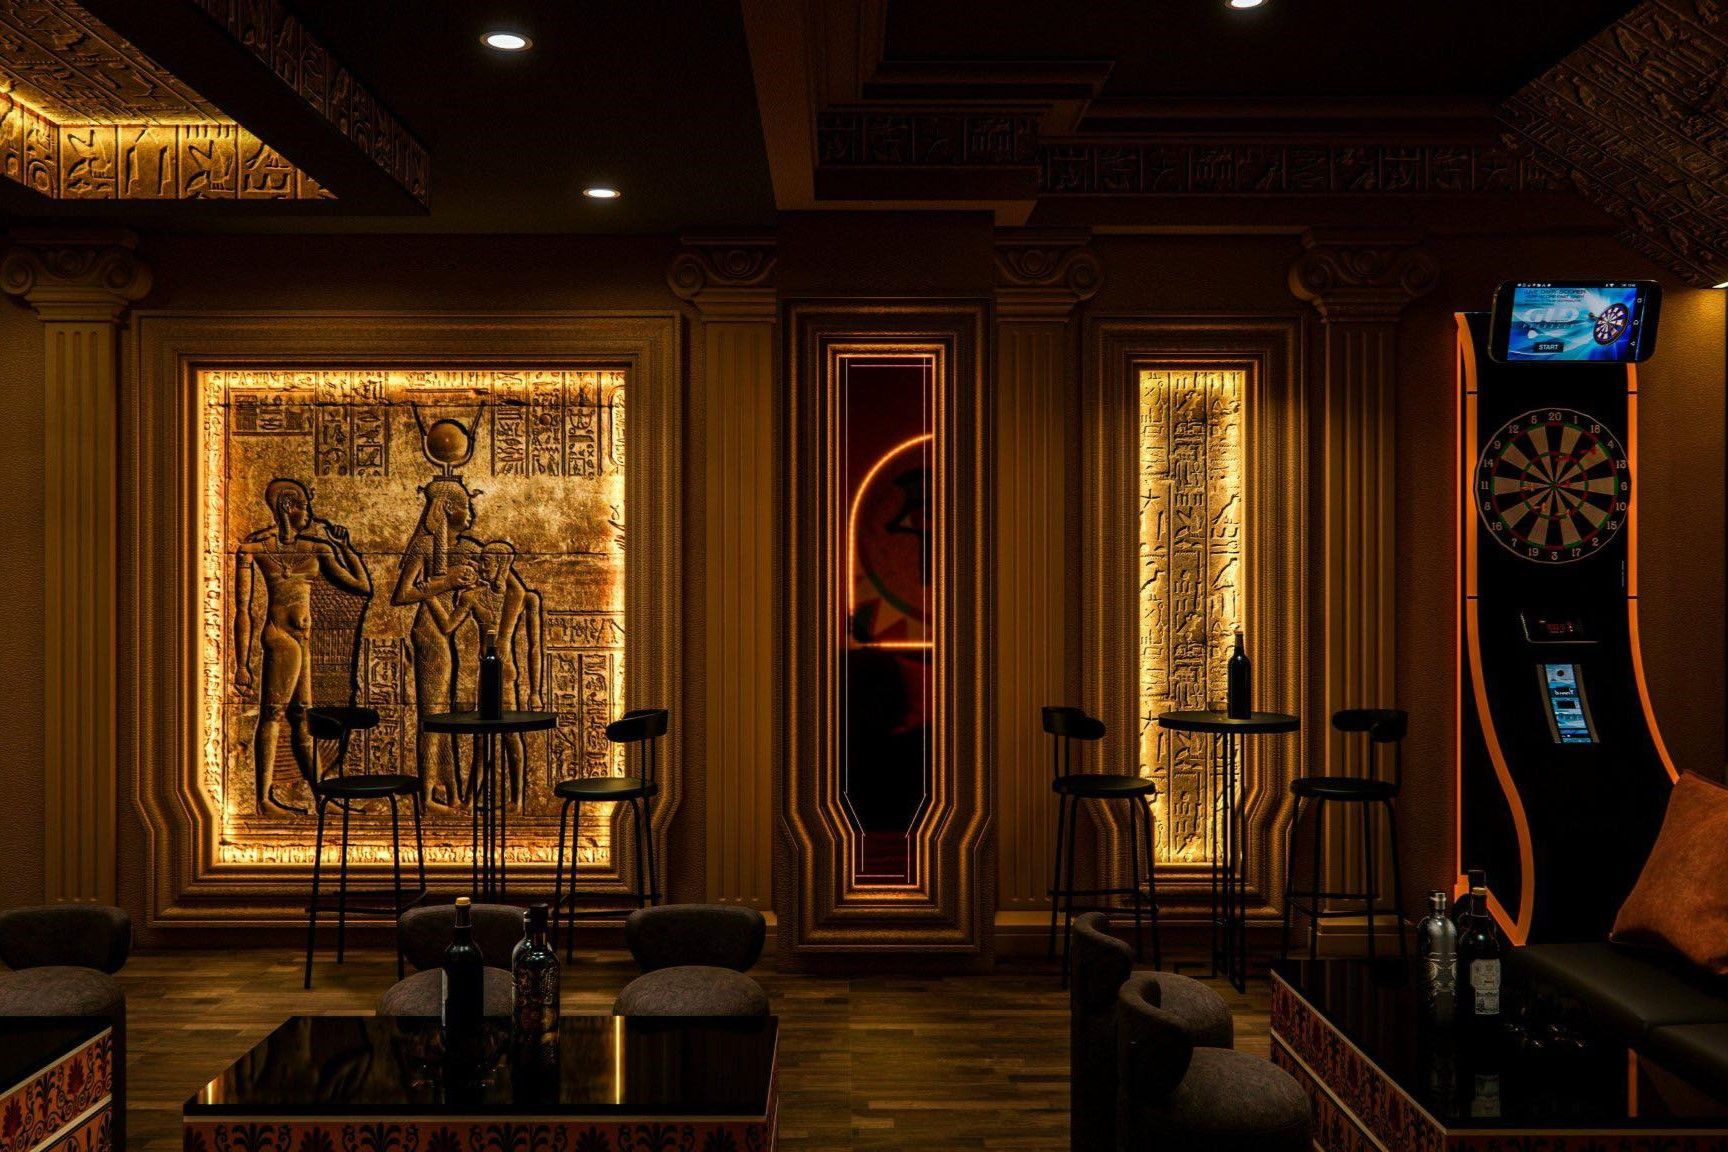 Cairo Lounge Bar - 60 Tôn Thất Thiệp